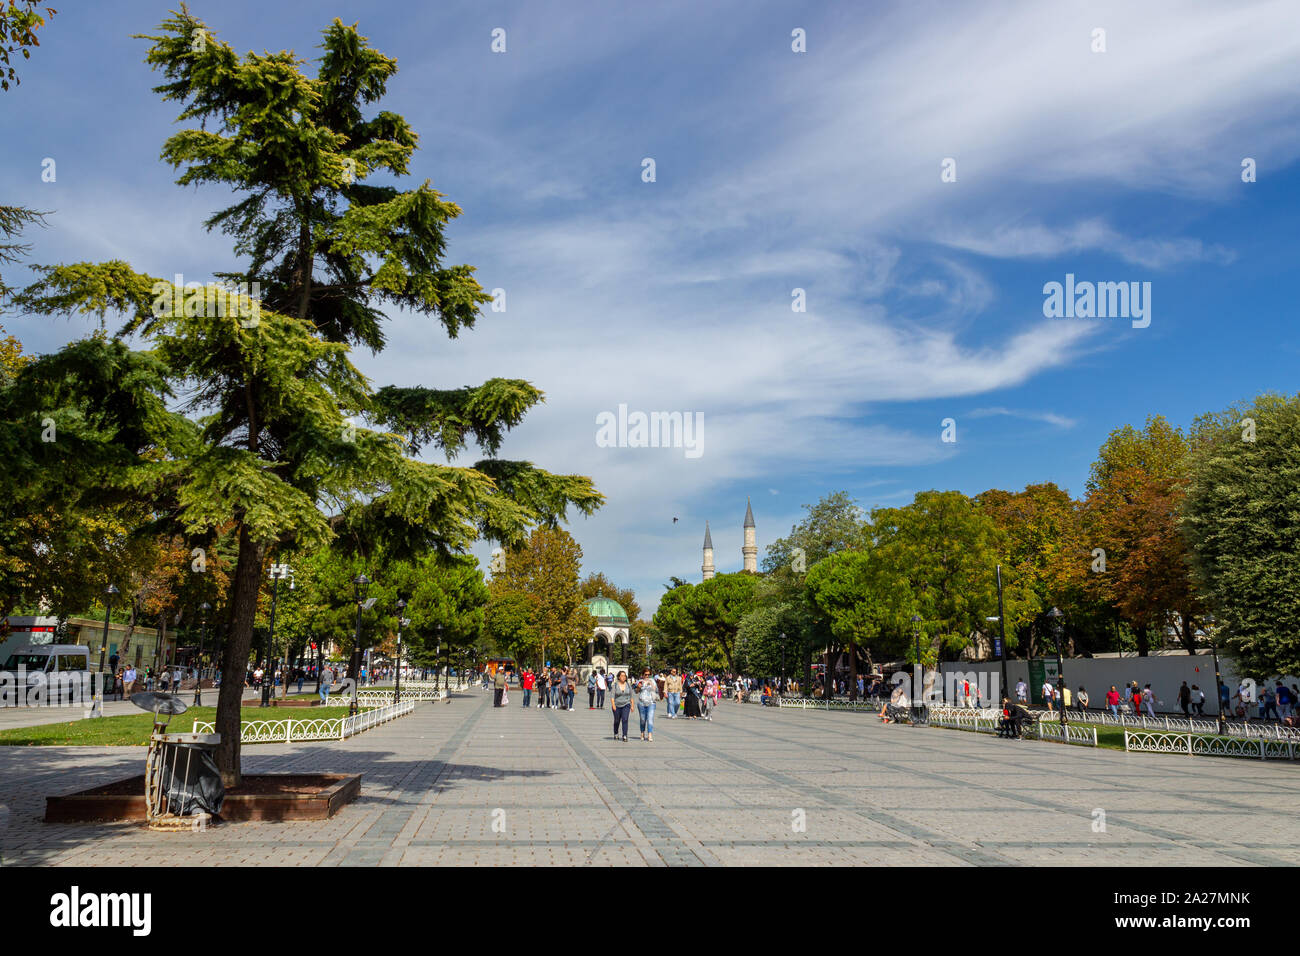 Sultanahmet, Istanbul / Turquie - 23 septembre 2019 : Istanbul, destination touristique populaire de la Place Sultanahmet d'une journée ensoleillée Banque D'Images